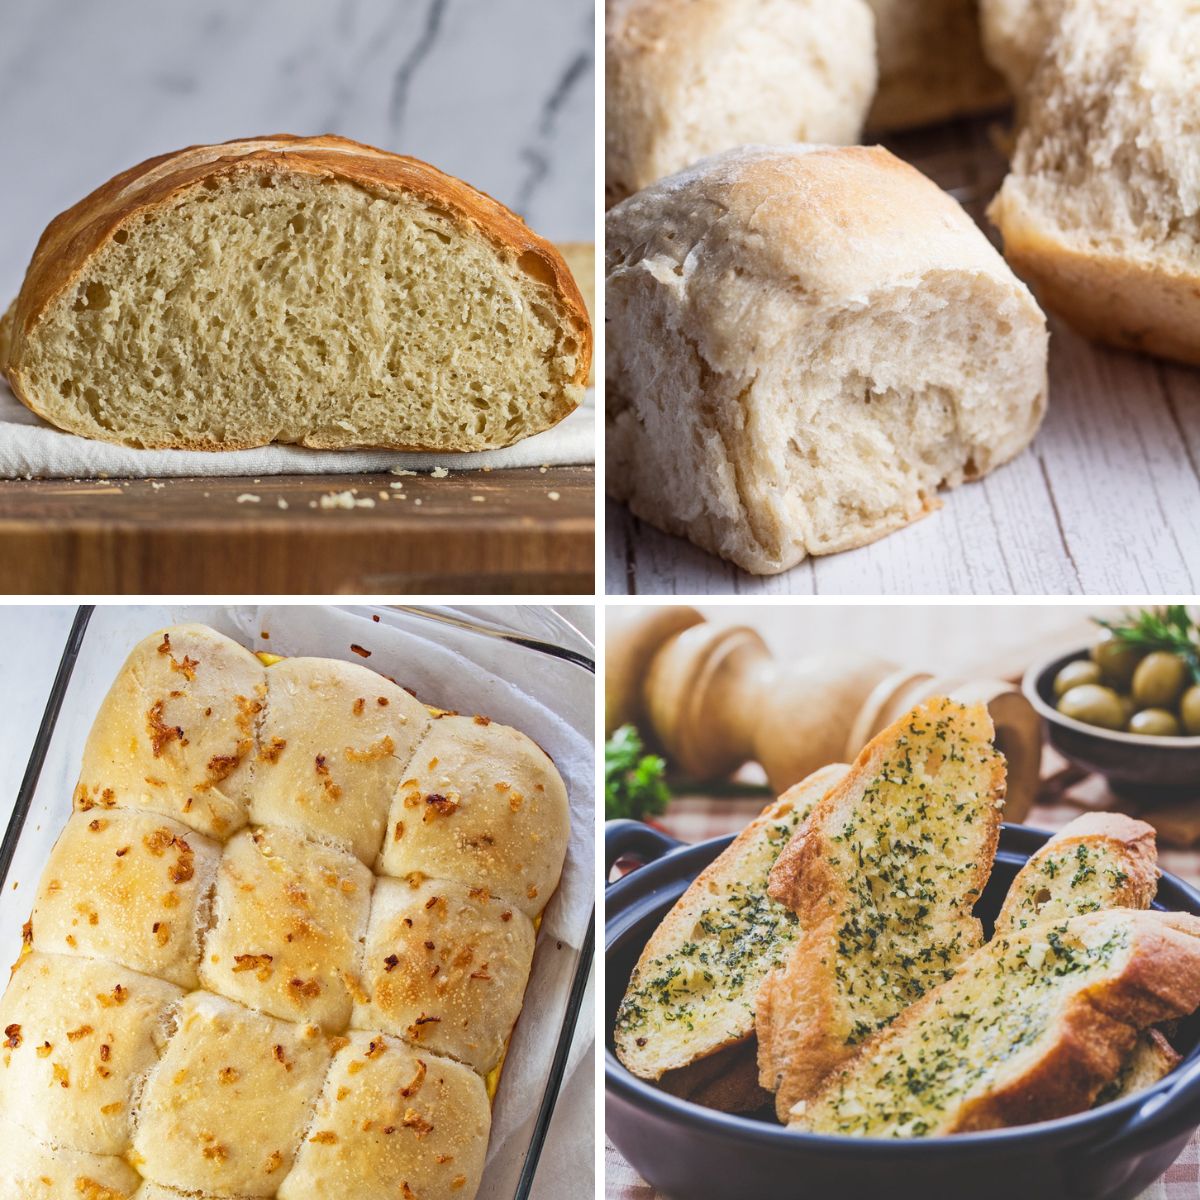 أفضل لفائف عشاء عيد الشكر ووصفات الخبز لخبزها ومشاركتها مع وجبات عطلتك.